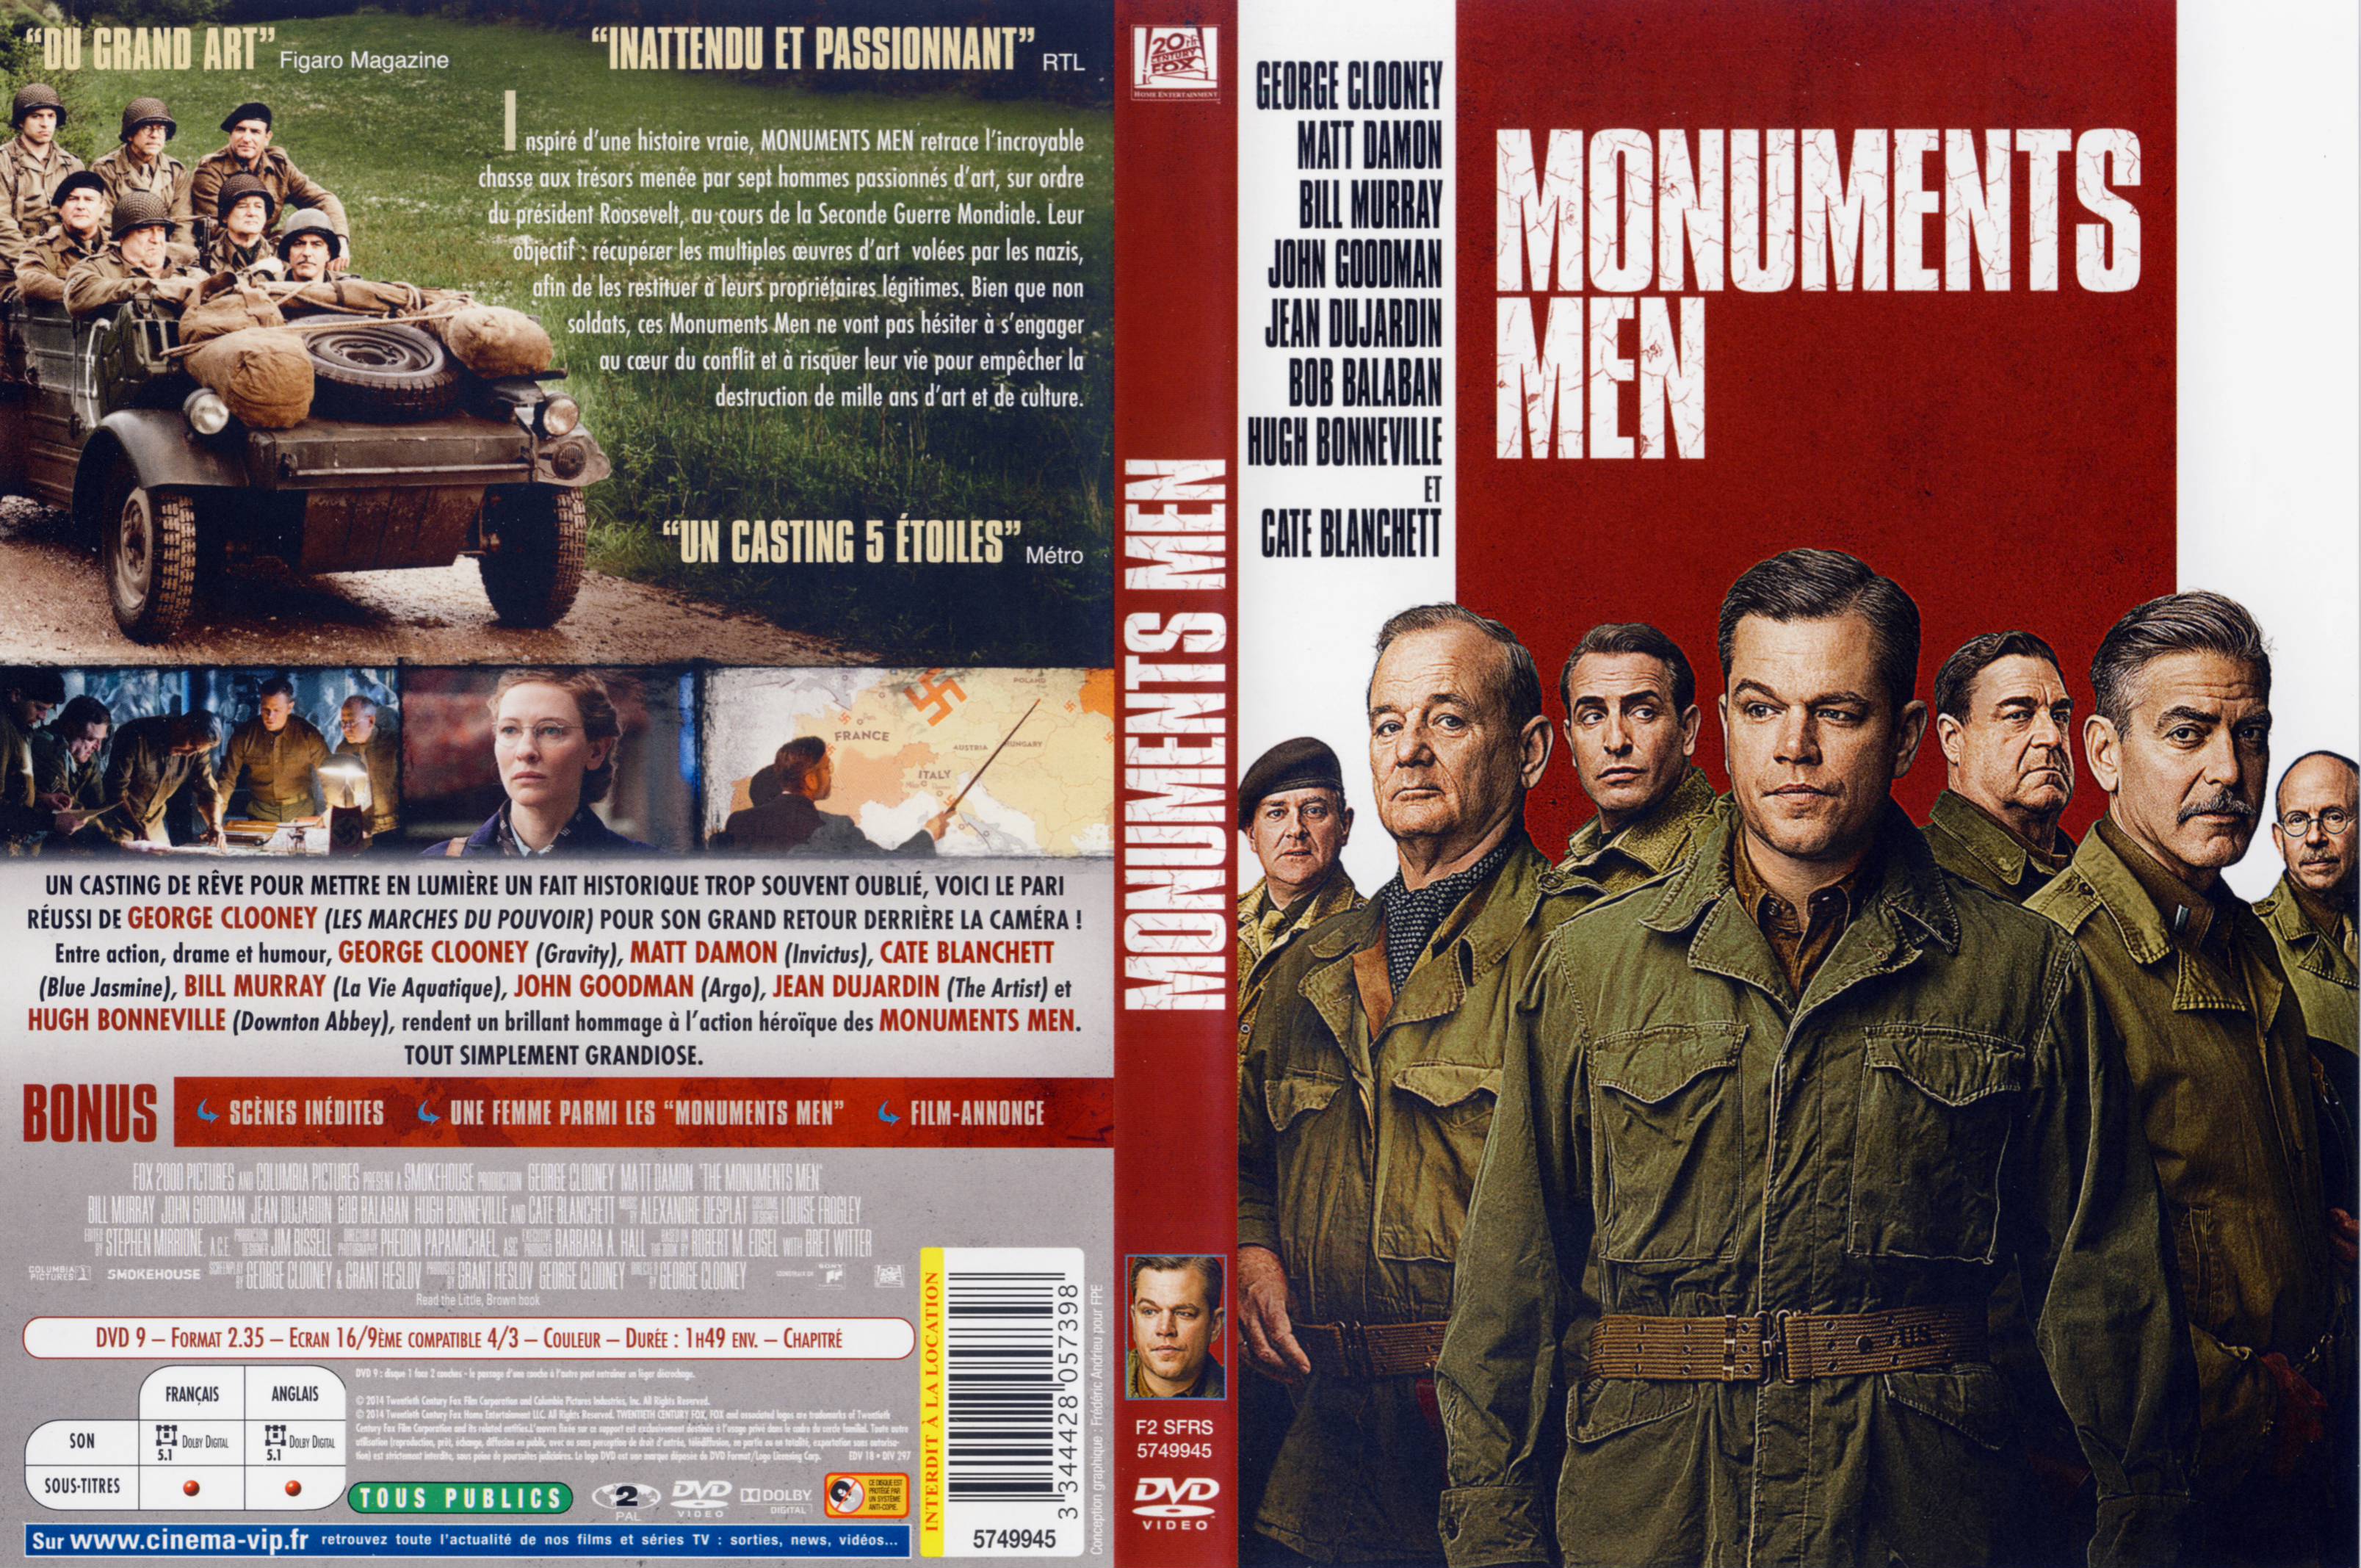 Jaquette DVD Monuments Men